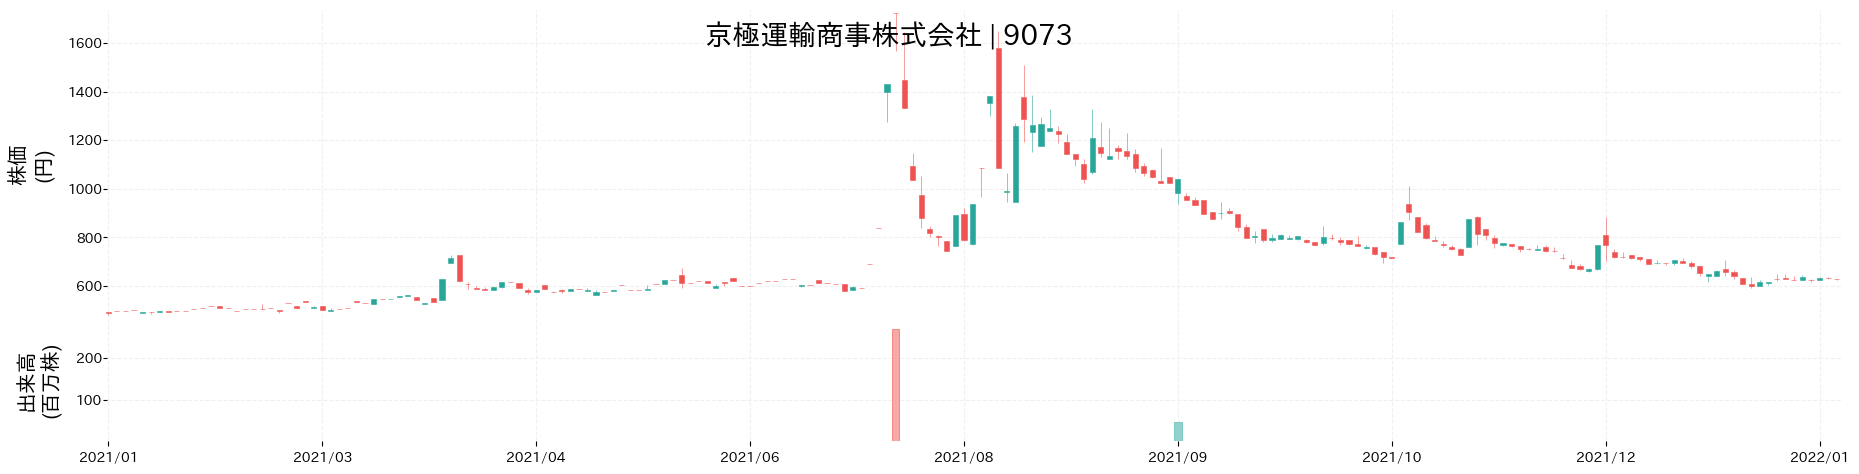 京極運輸商事の株価推移(2021)